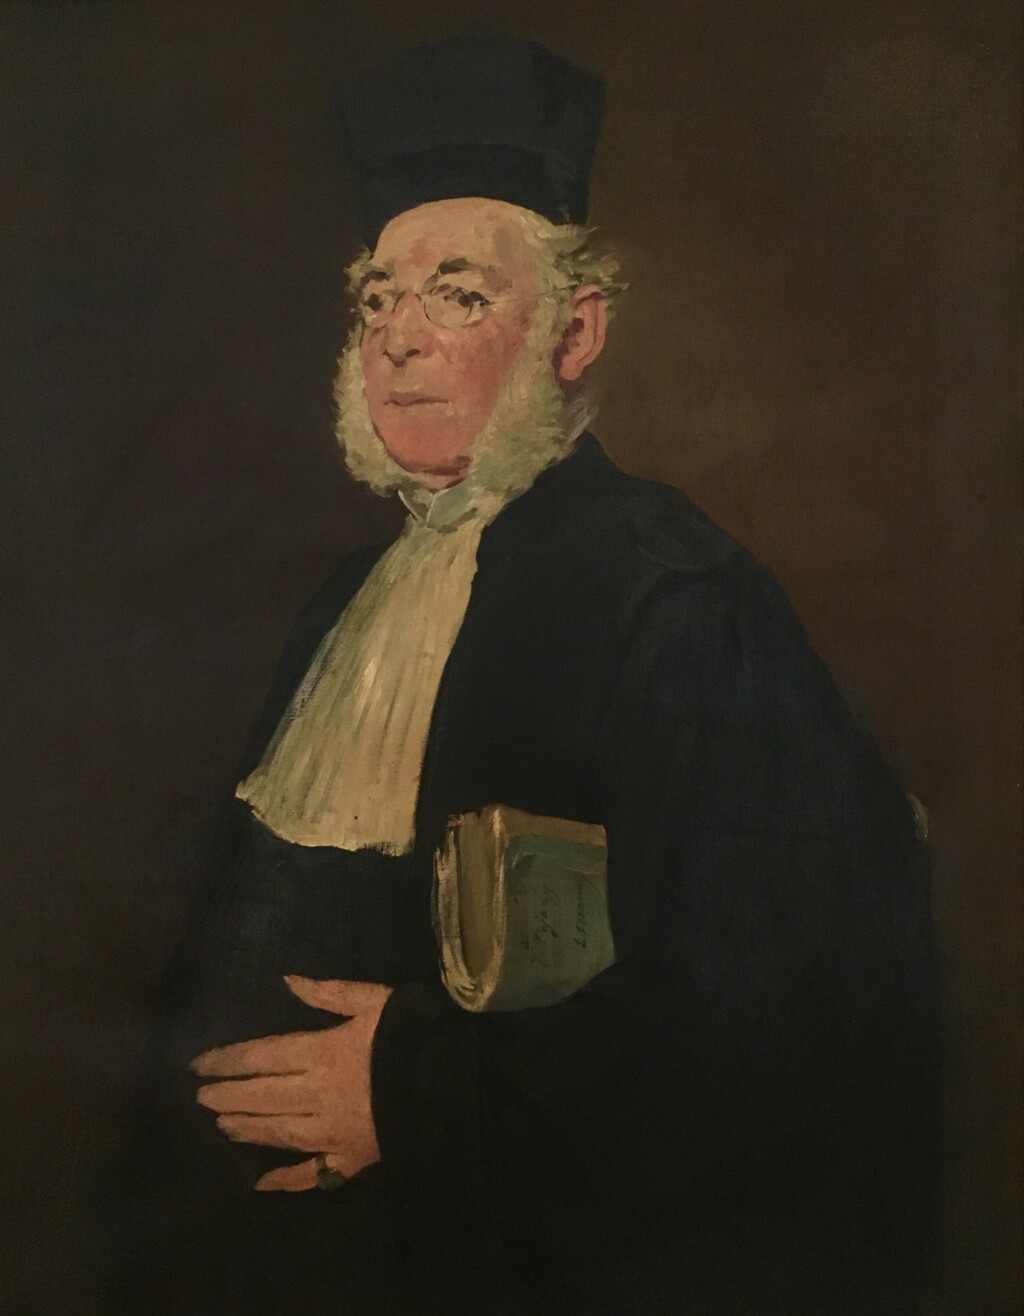 Portrait of Monsieur Jules Dejouy by Edouard Manet